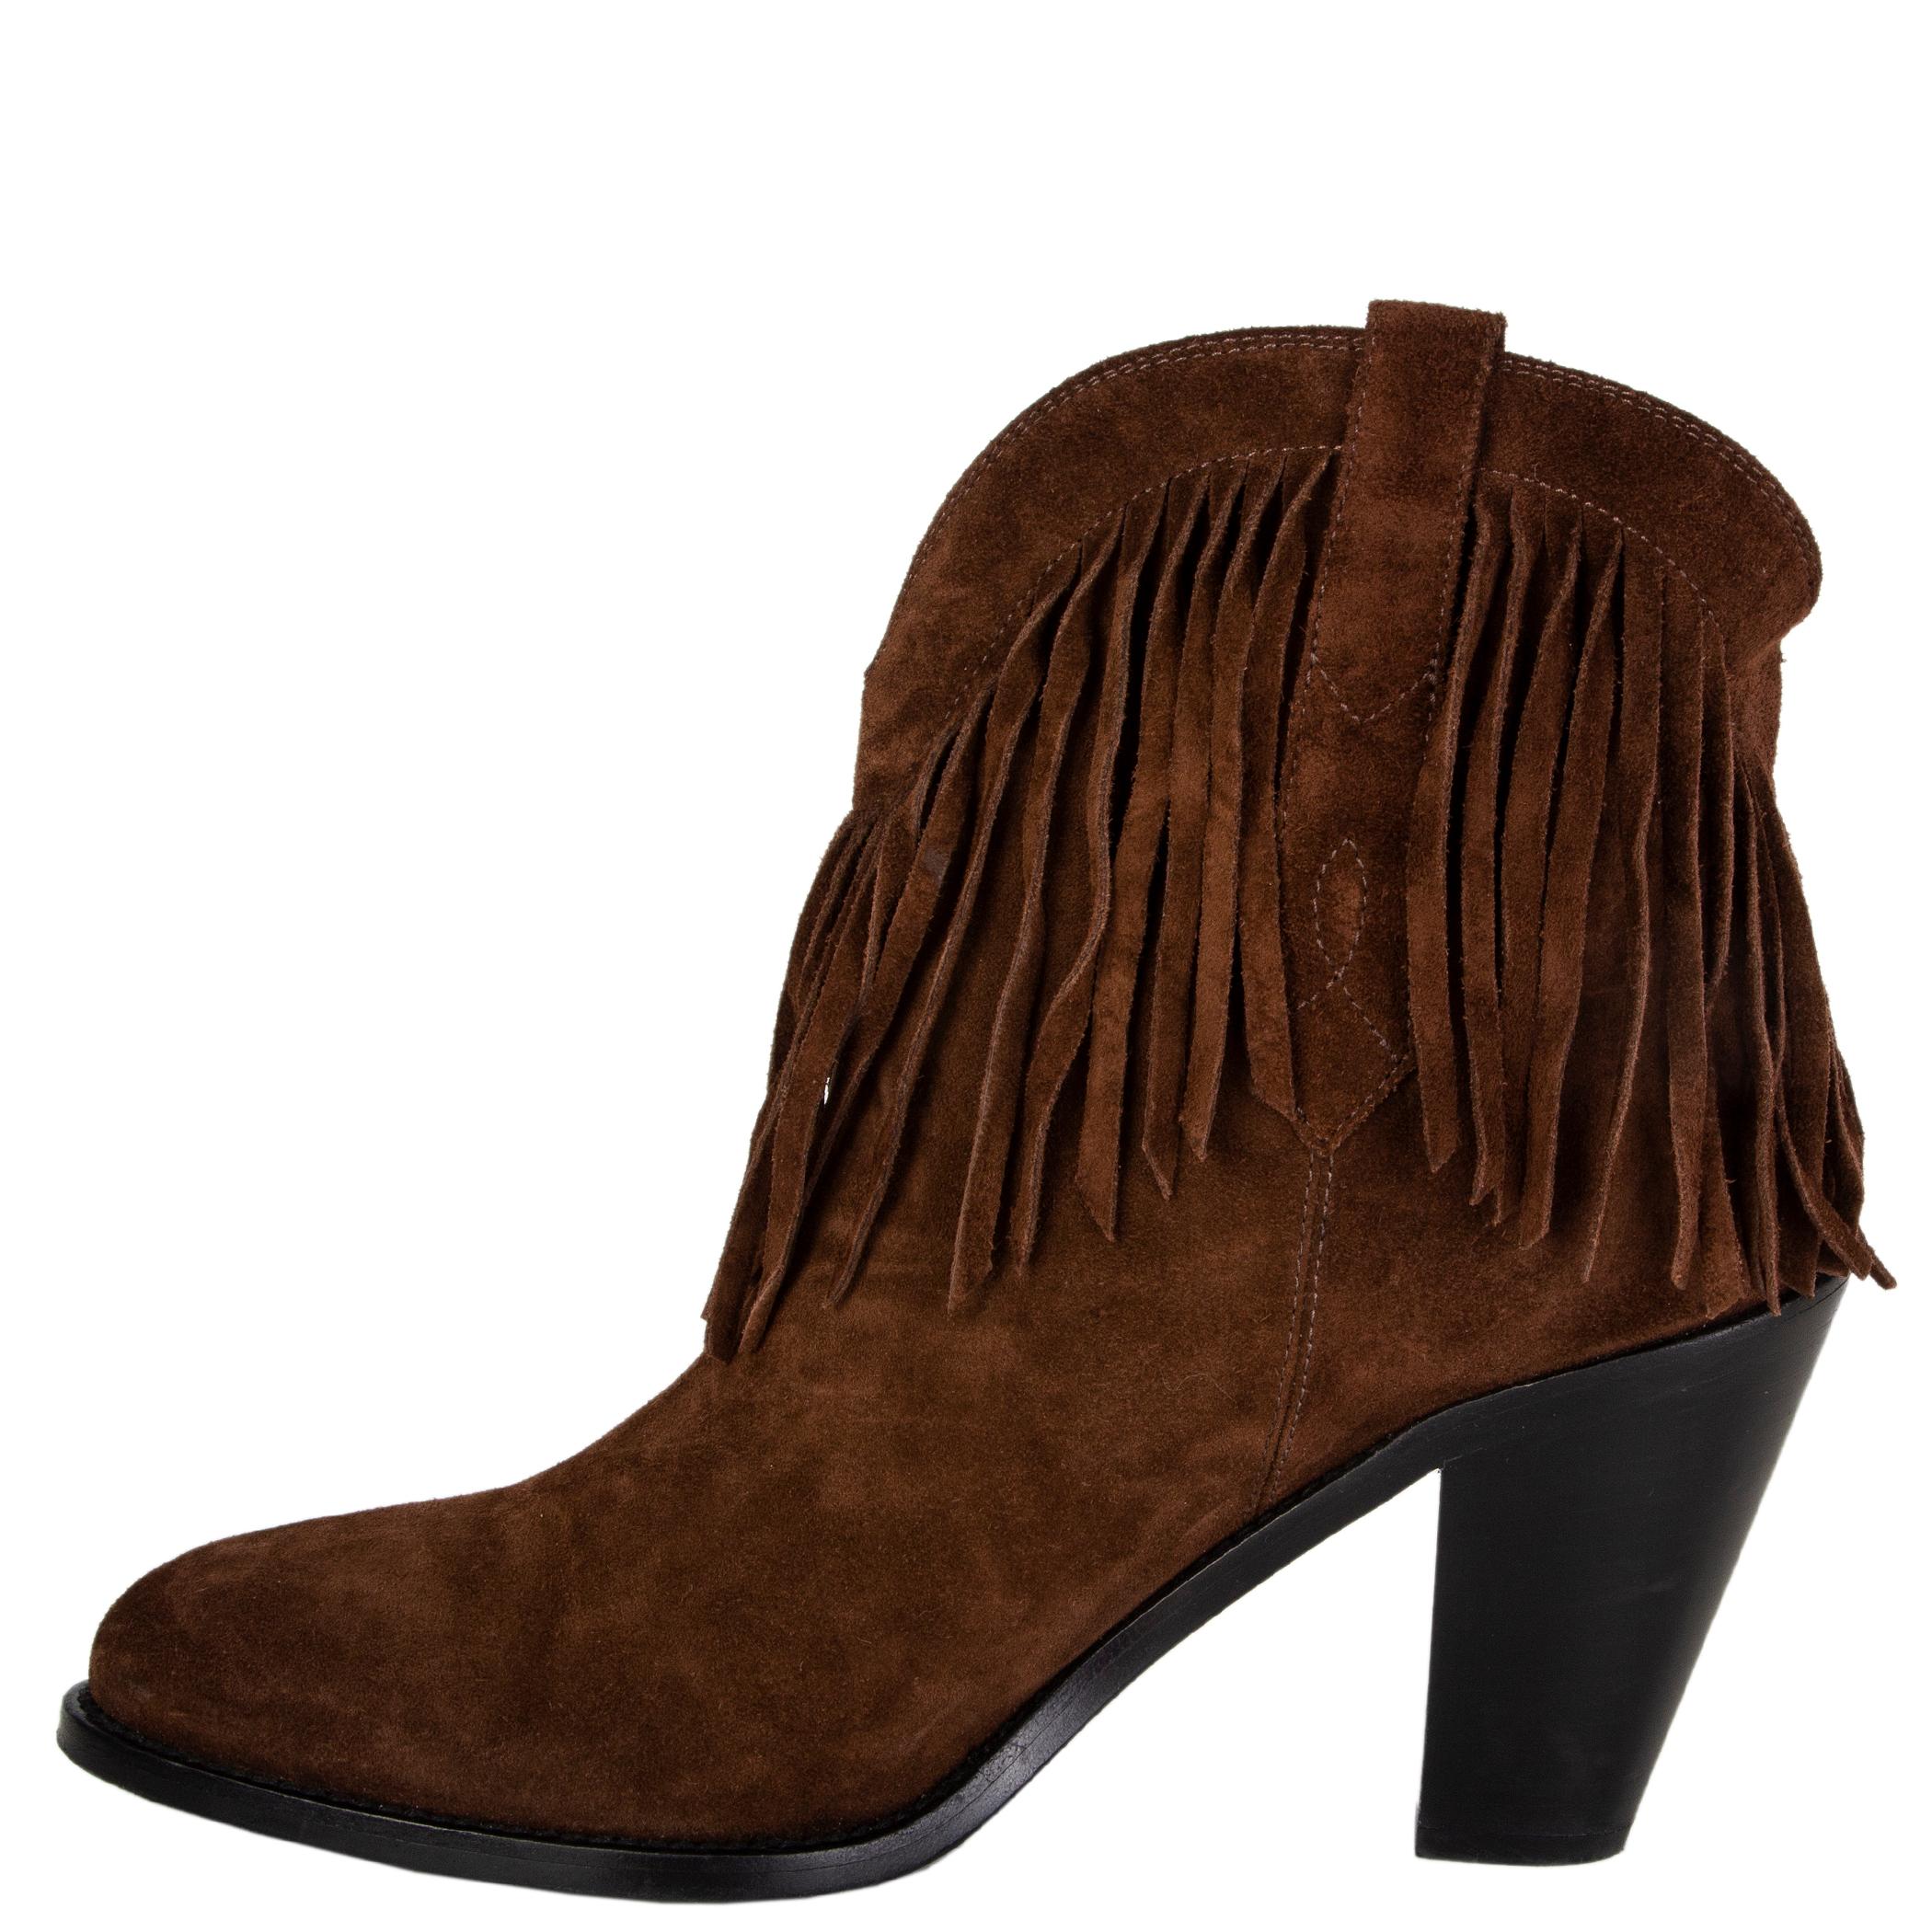 Black SAINT LAURENT brown suede CURTIS FRINGE COWBOY Ankle Boots Shoes 40